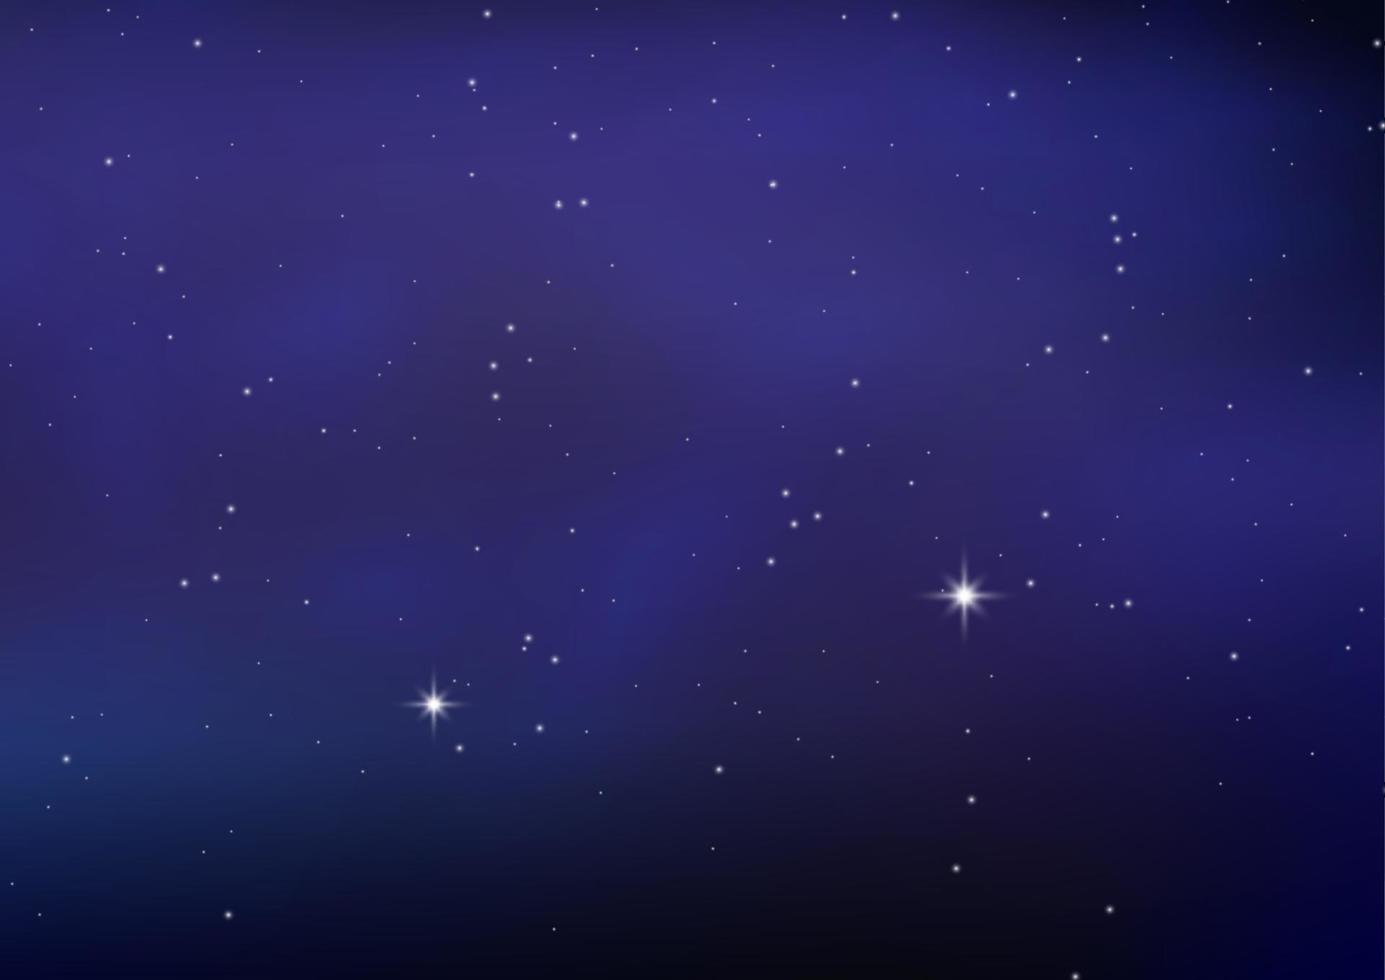 cielo estrellado brillante de noche, fondo espacial azul con estrellas, espacio. hermoso cielo nocturno. vector